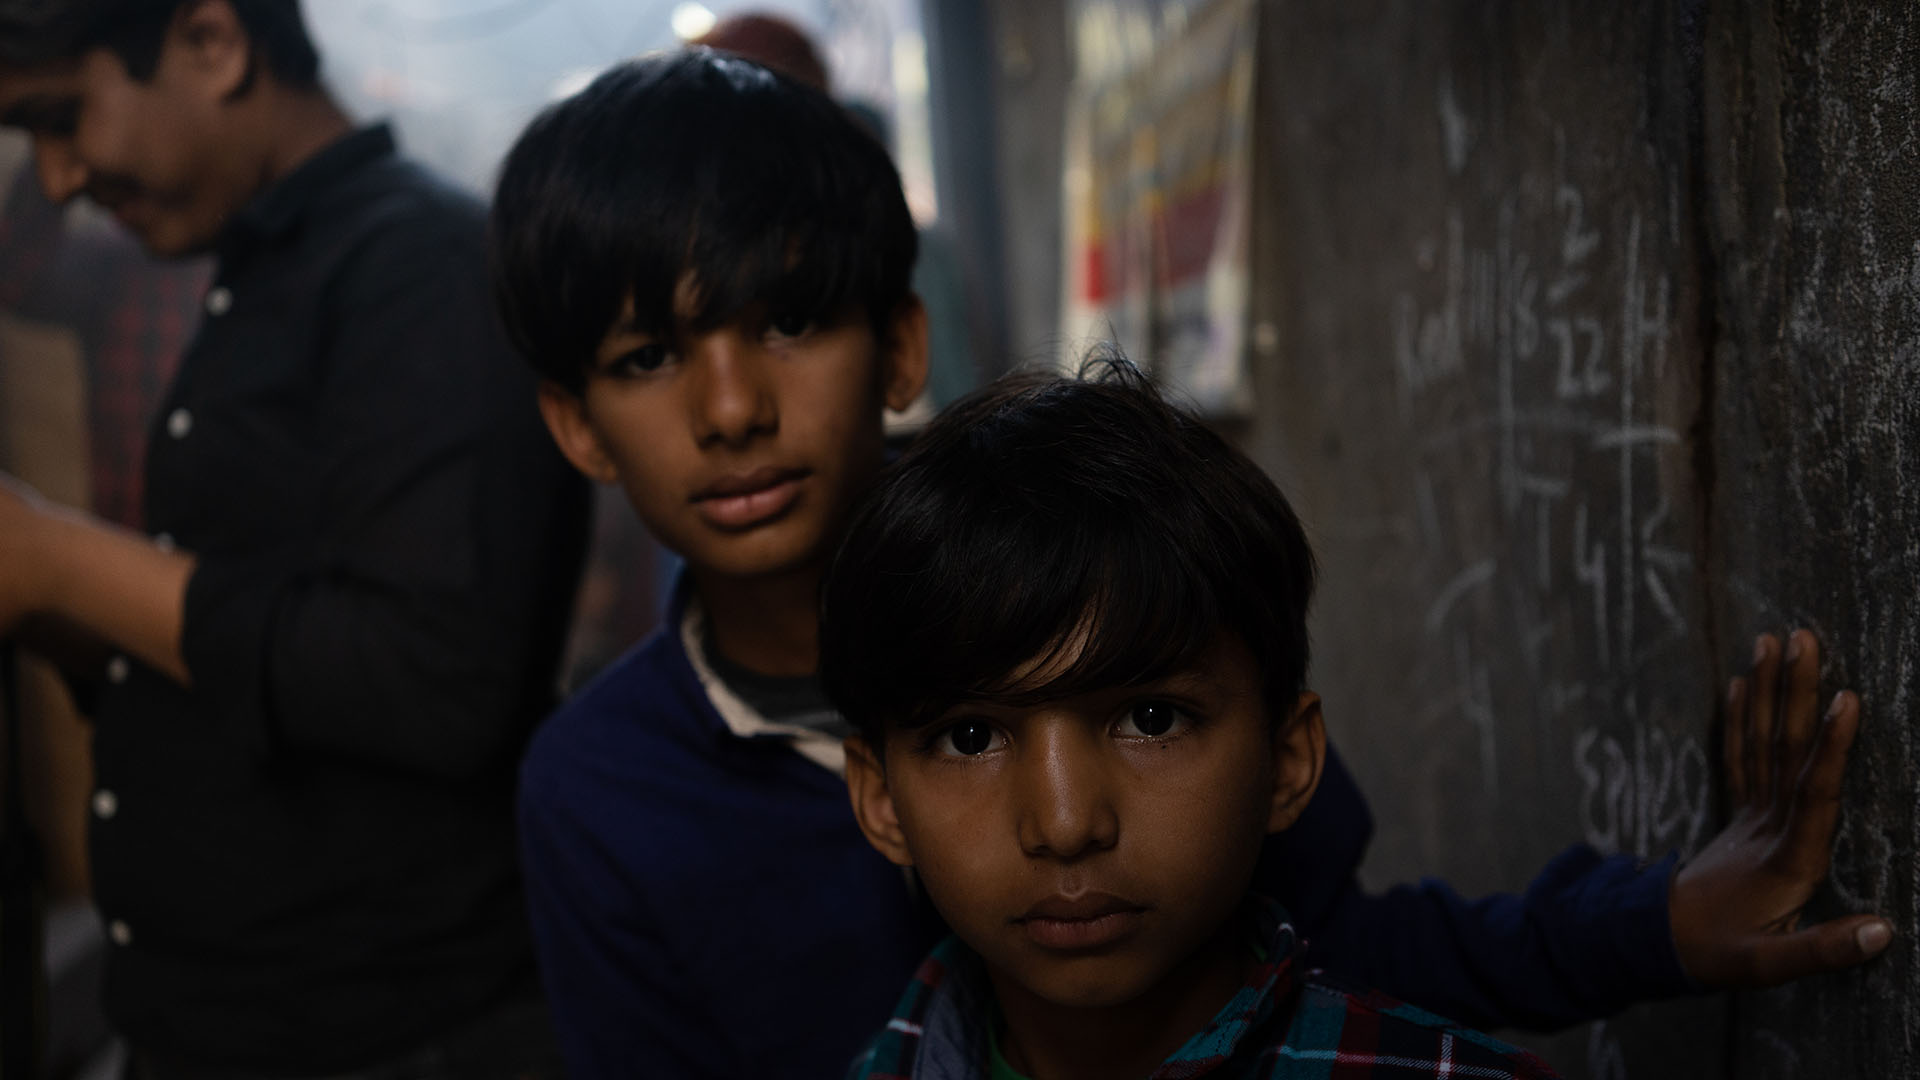 Brick Kiln, zwei Jungen in einer engen Seitengasse zu einer Kirche - Christen in Pakistan sind nach dem Hinduismus die zweitgrösste religiöse Minderheit in Pakistan und oft der Diskriminierung ausgesetzt. 11.03.22, Gujarwala, Pakistan. © Alexandra Meister